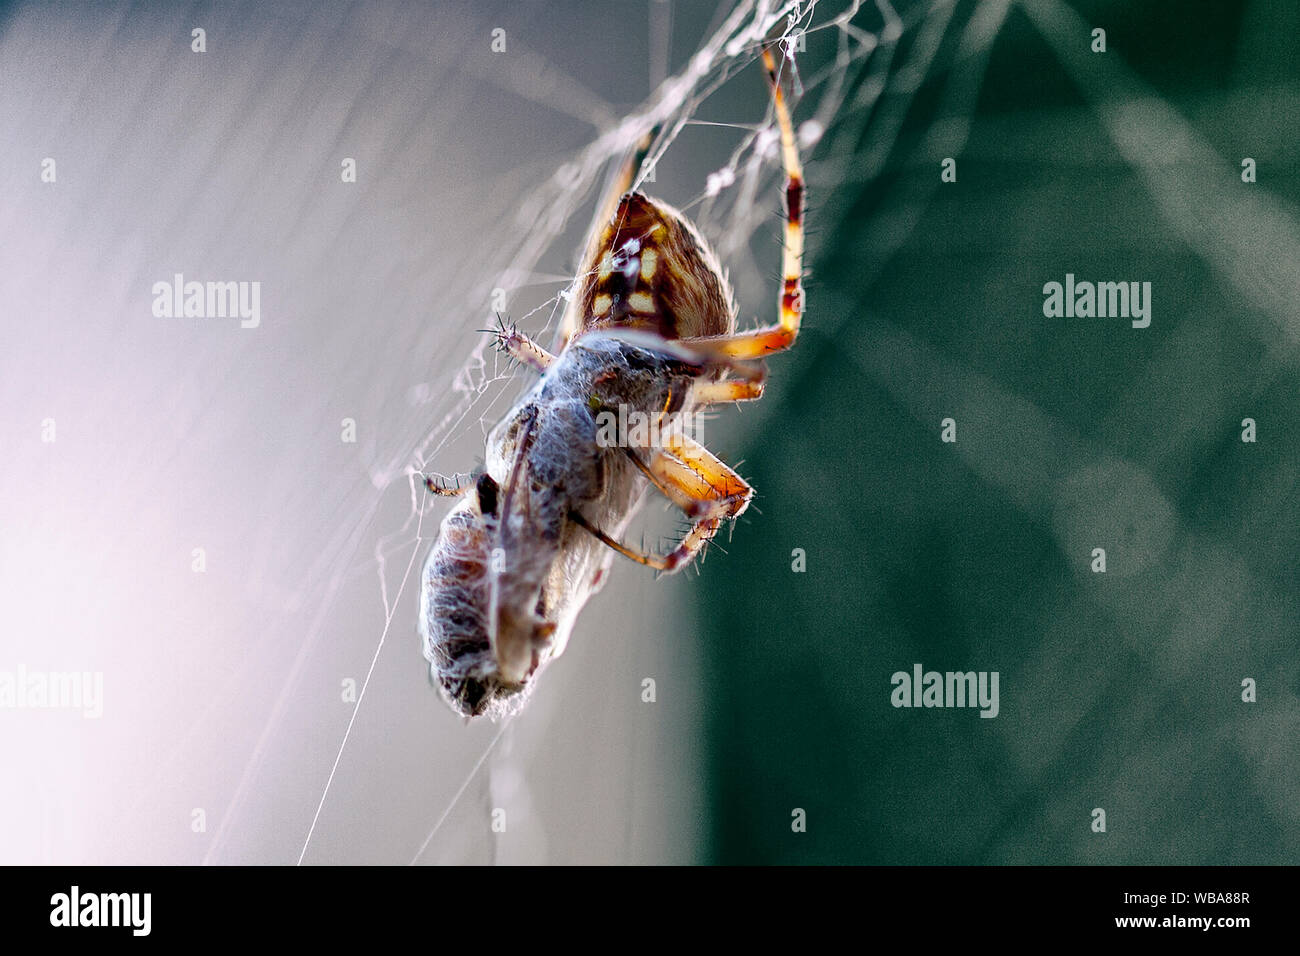 Makro close-up Fotos von Spider-arachnid in einem Spinnennetz web Spiderweb fallenstellen Beute Stockfoto